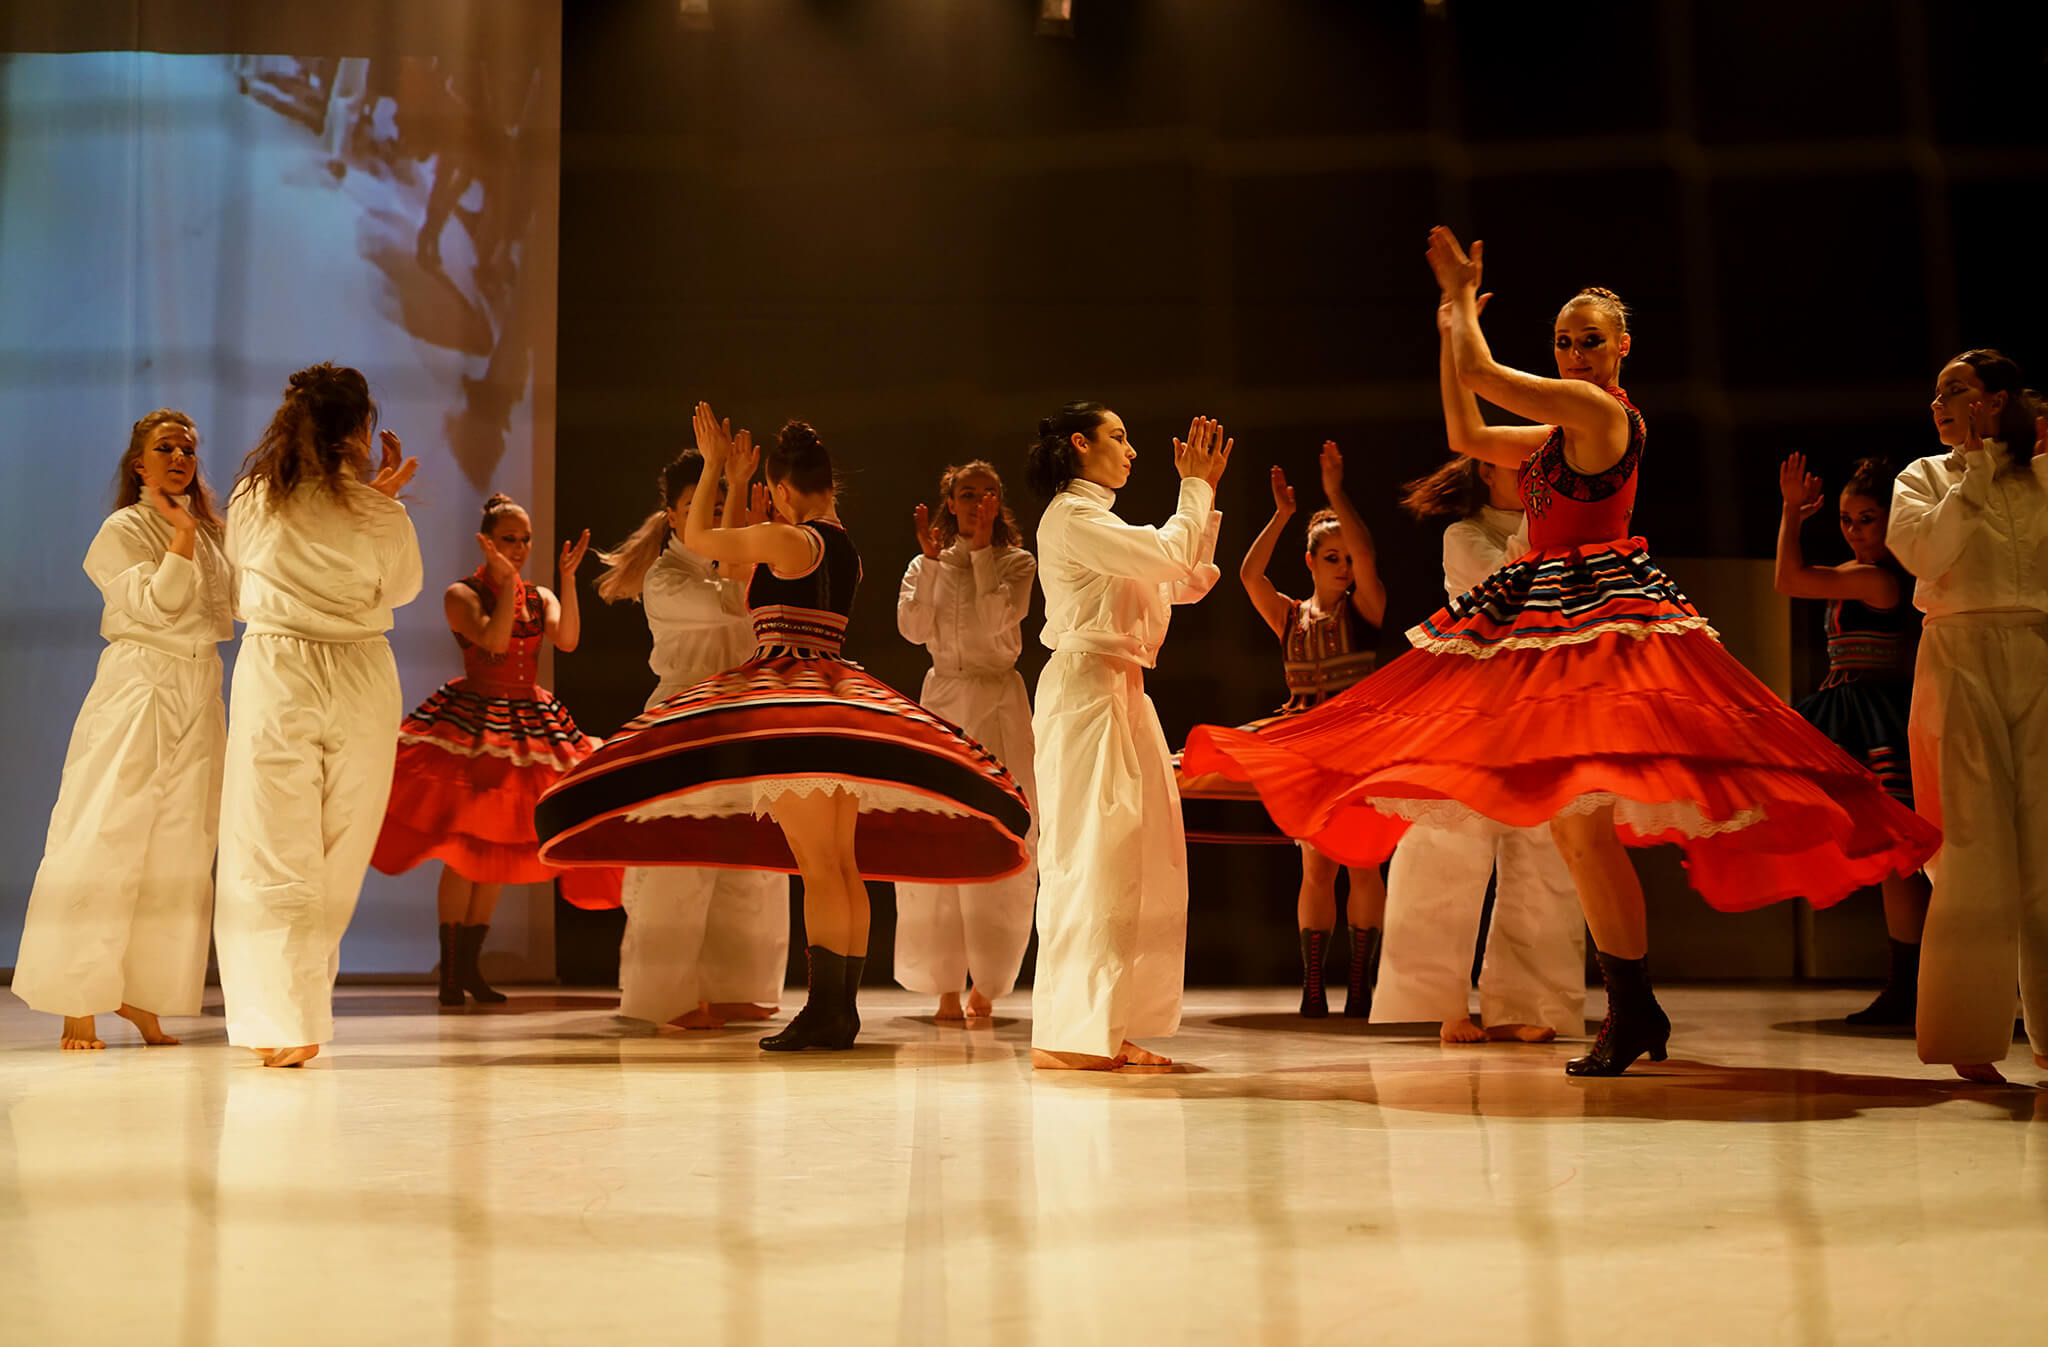 zdjęcie ze spektaklu "DZIADOWISKO", kobiety w białych kombinezonach oraz inne w śląskich strojach ludowych, kręcą się na scenie i klaszczą w dłonie.